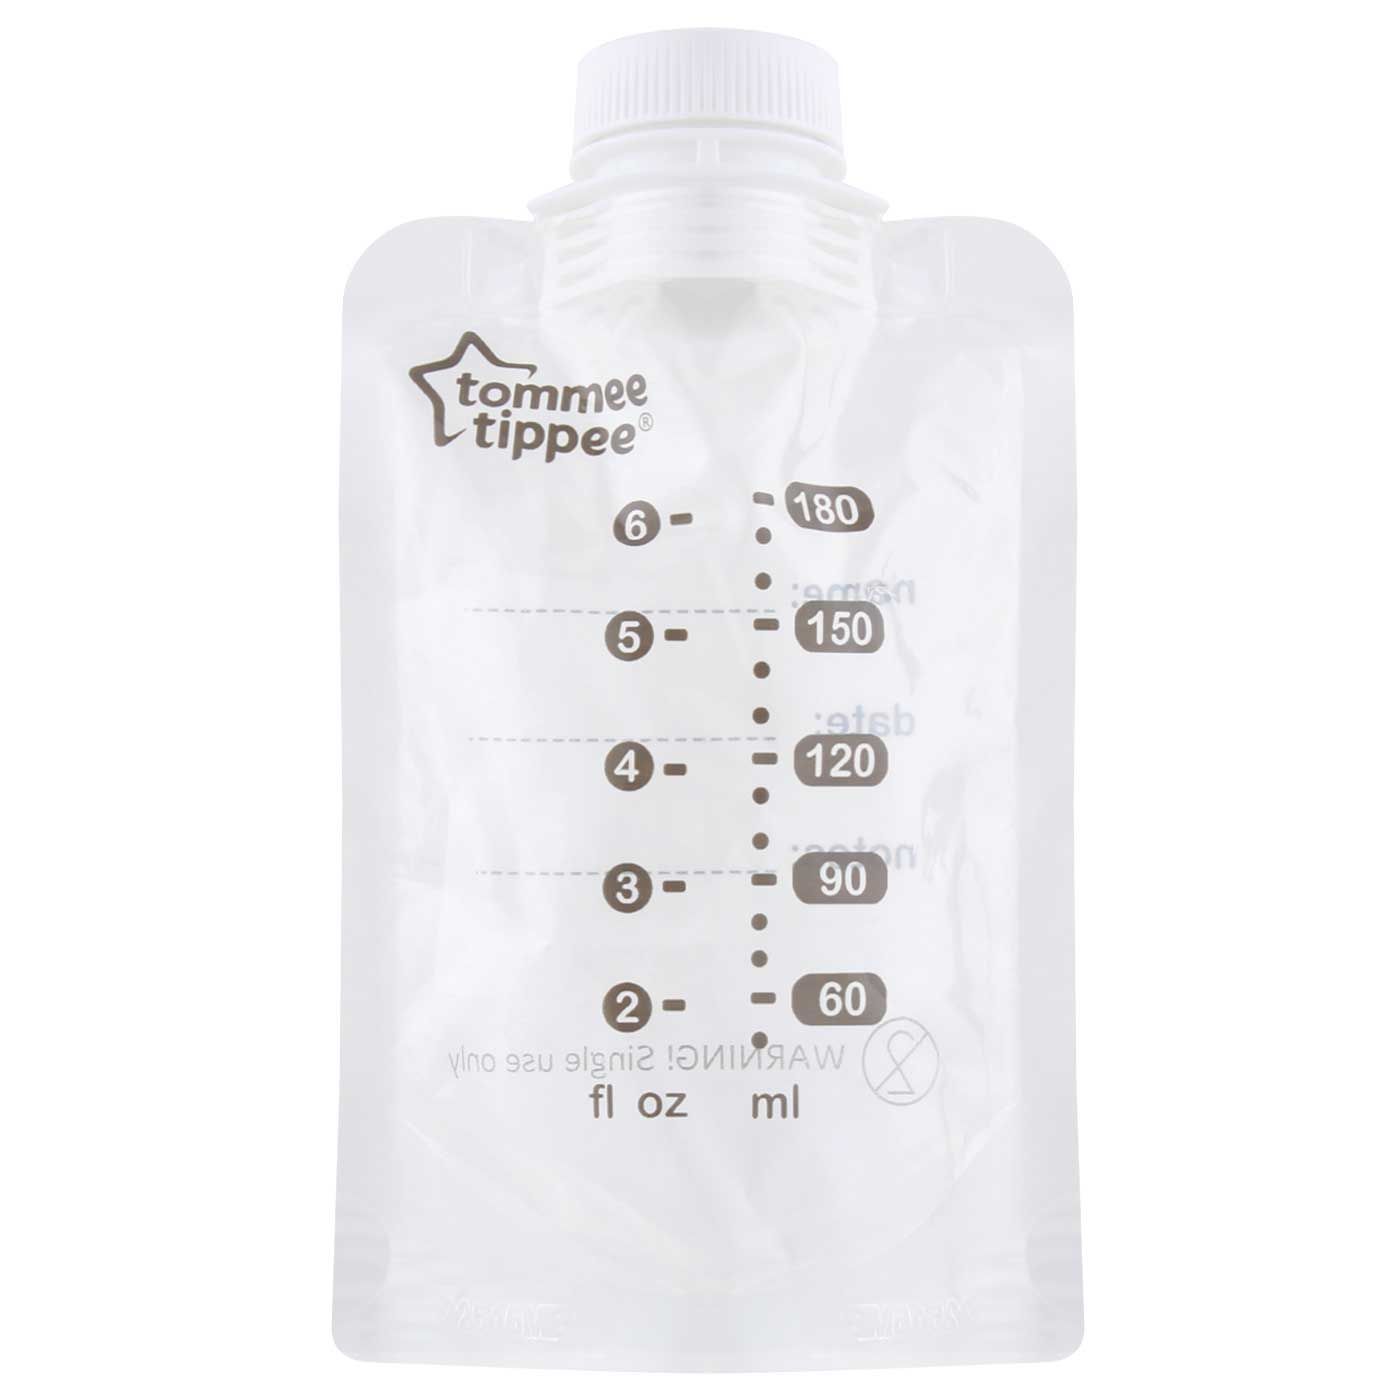 Tommee Tippee BMM Breast Milk Pouch Bottle - 6